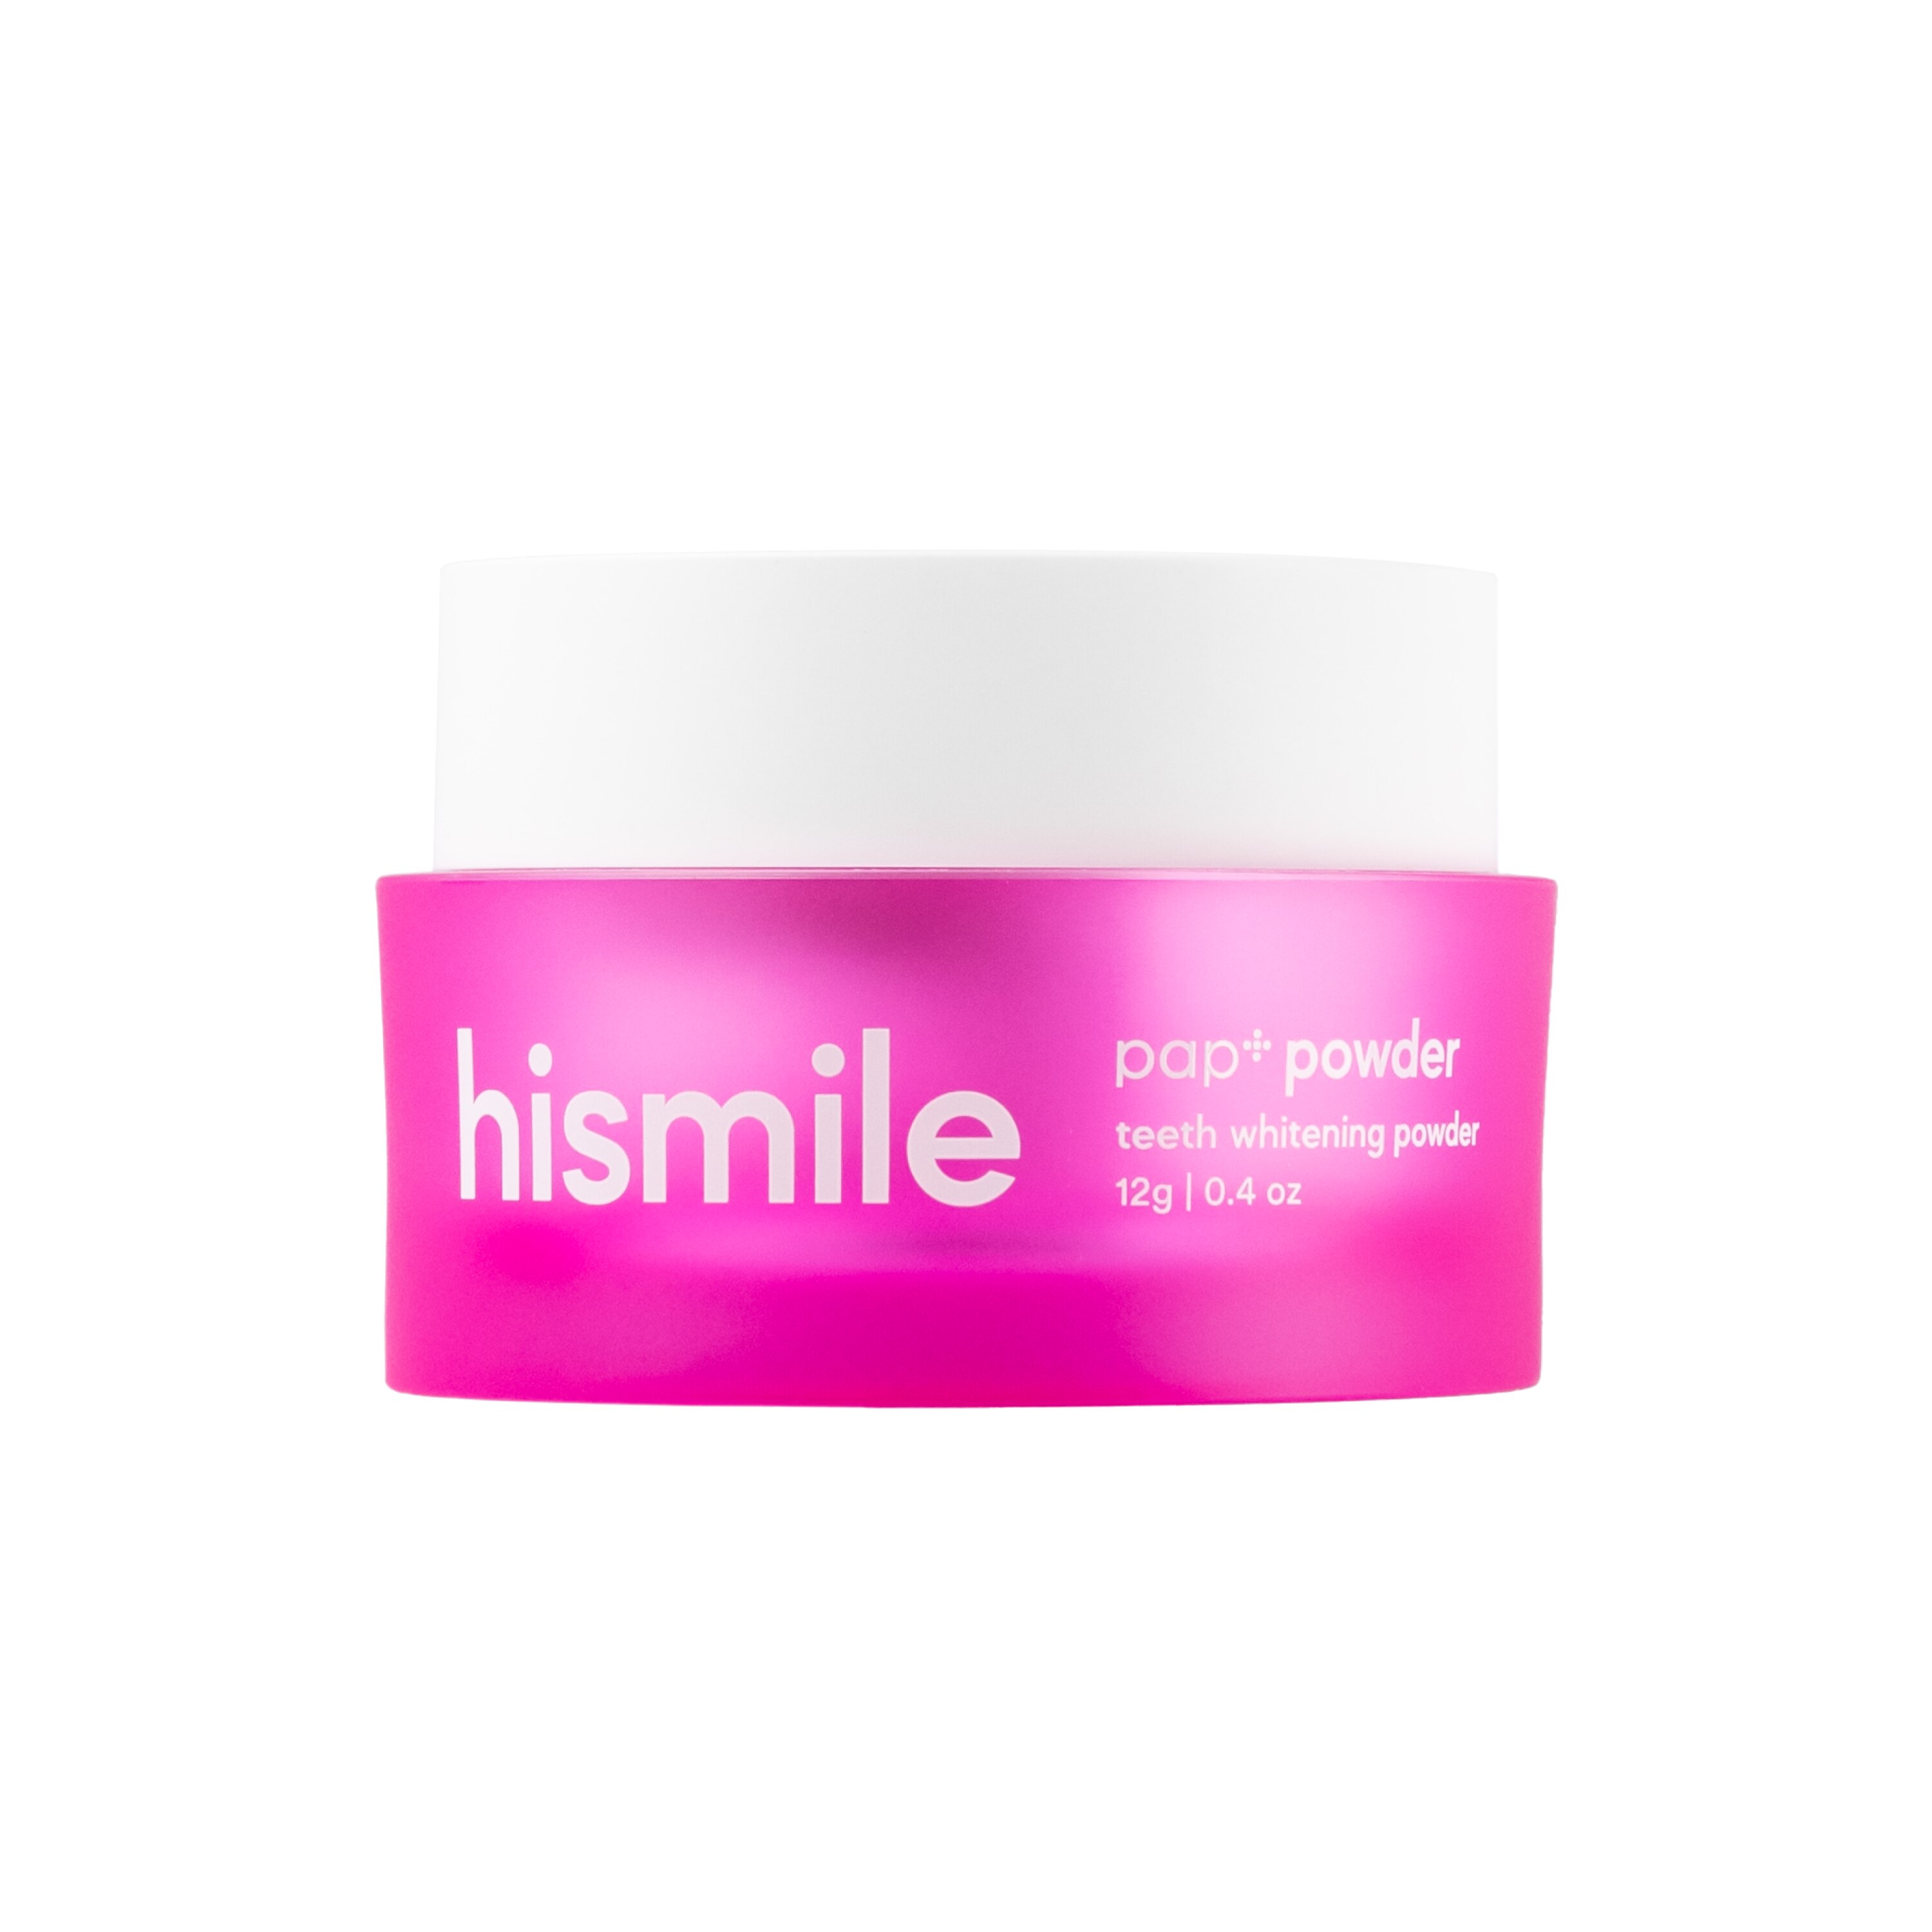 hismile PAP+ Teeth Whitening Powder, 0.4 OZ